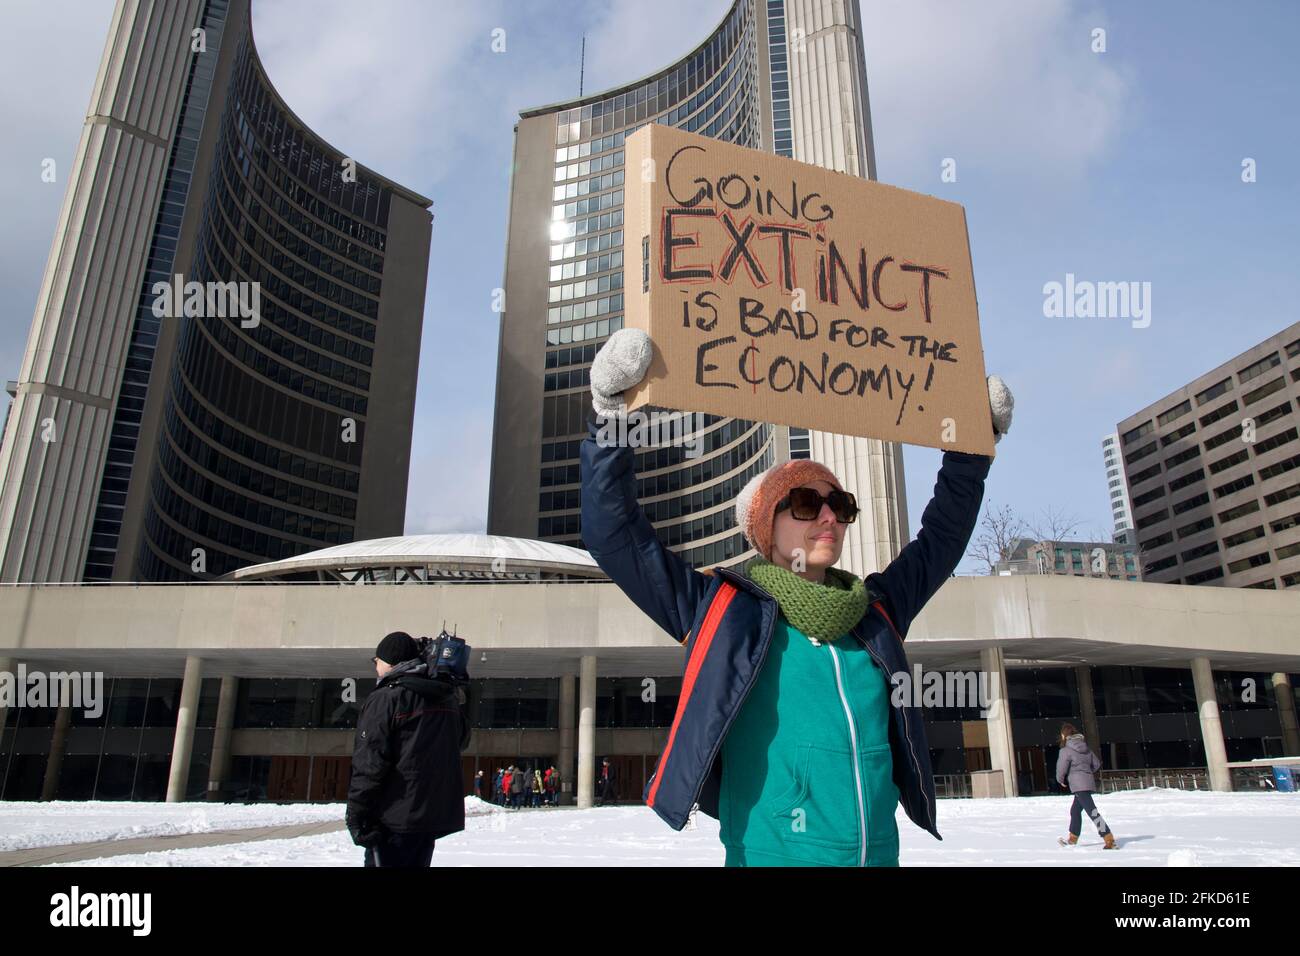 Toronto, Ontario, Kanada - 03/01/2019: Junge Frauen halten Plakat für den Kampf gegen den Klimawandel - Globale Erwärmung und Umwelt - Fokus auf das Plakat Stockfoto